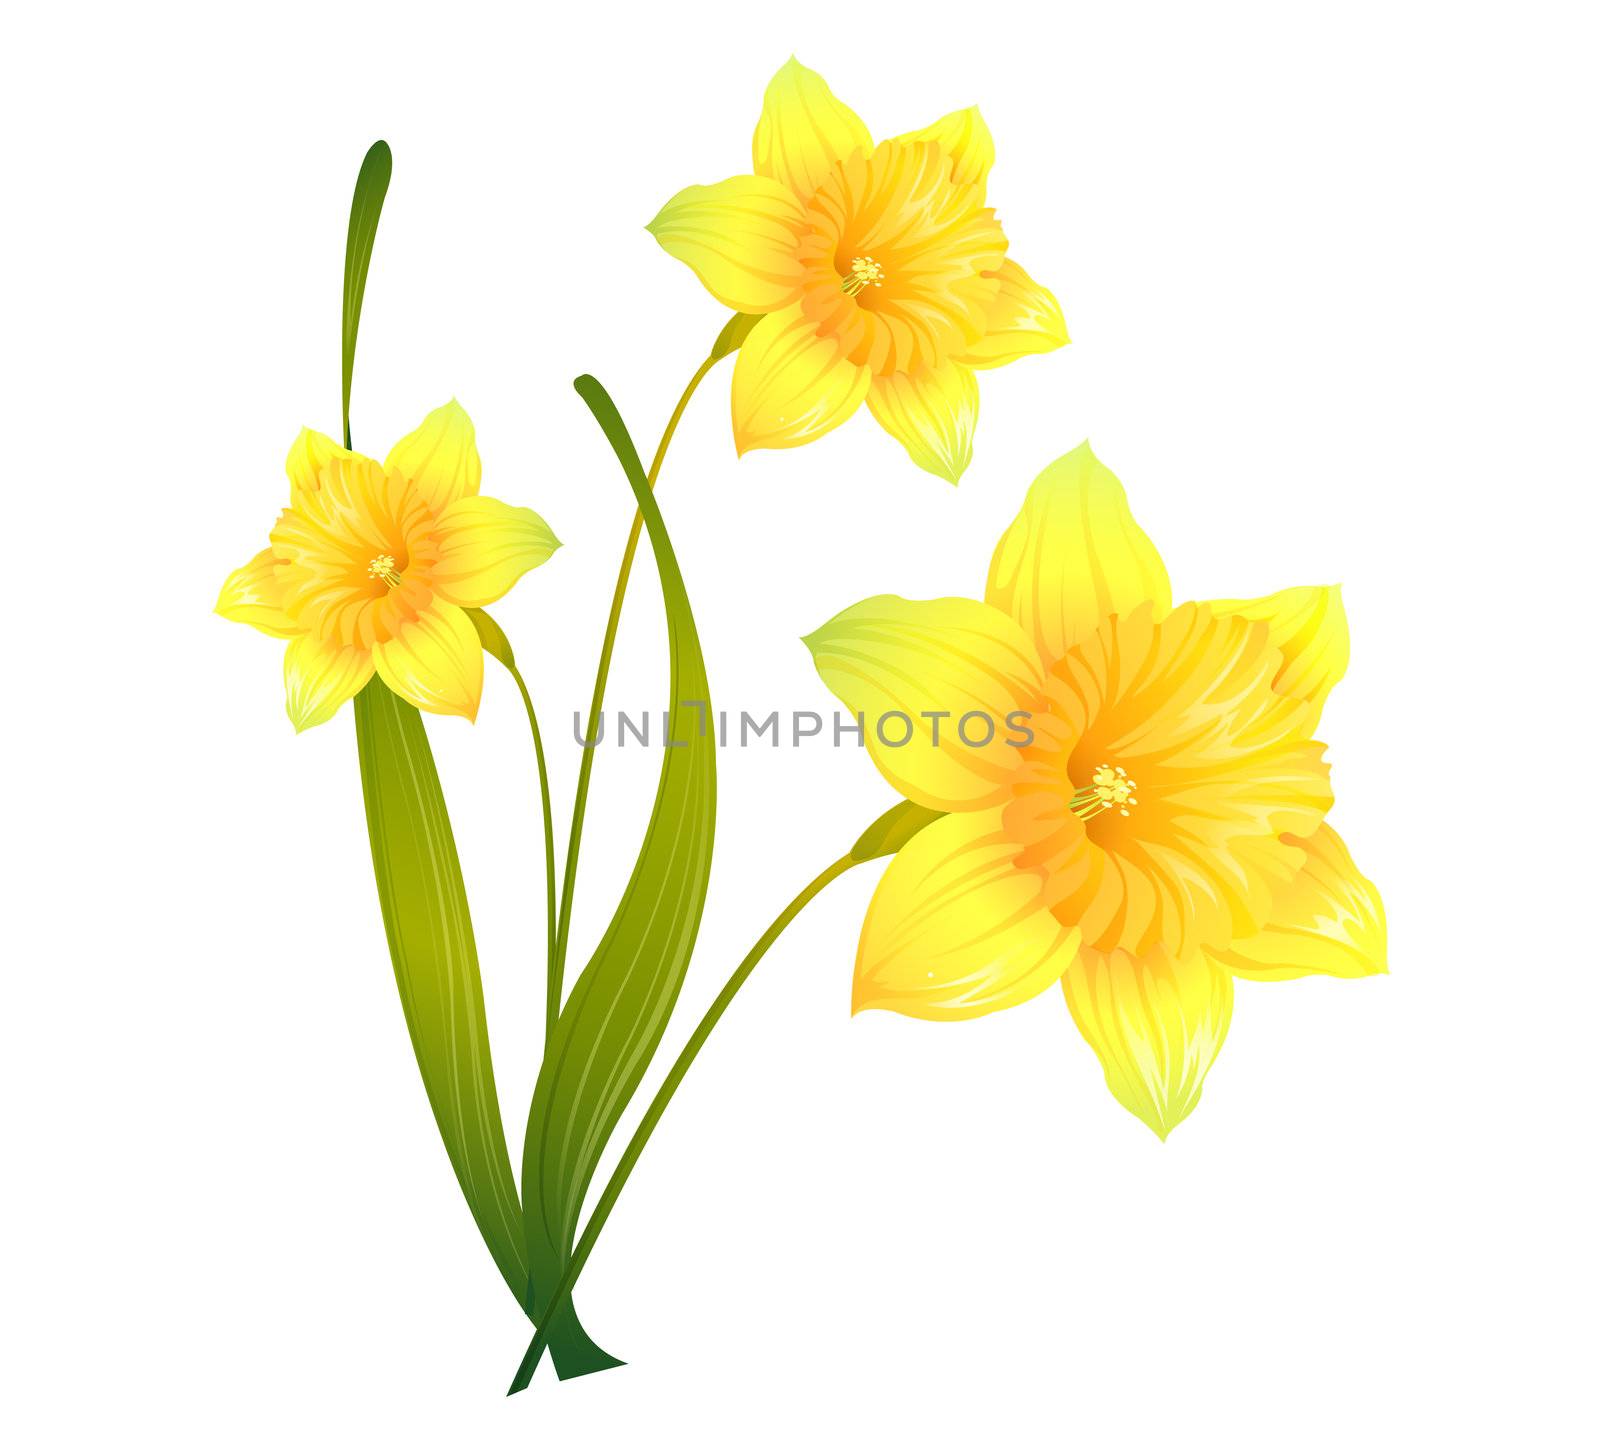 Daffodils by wenbin